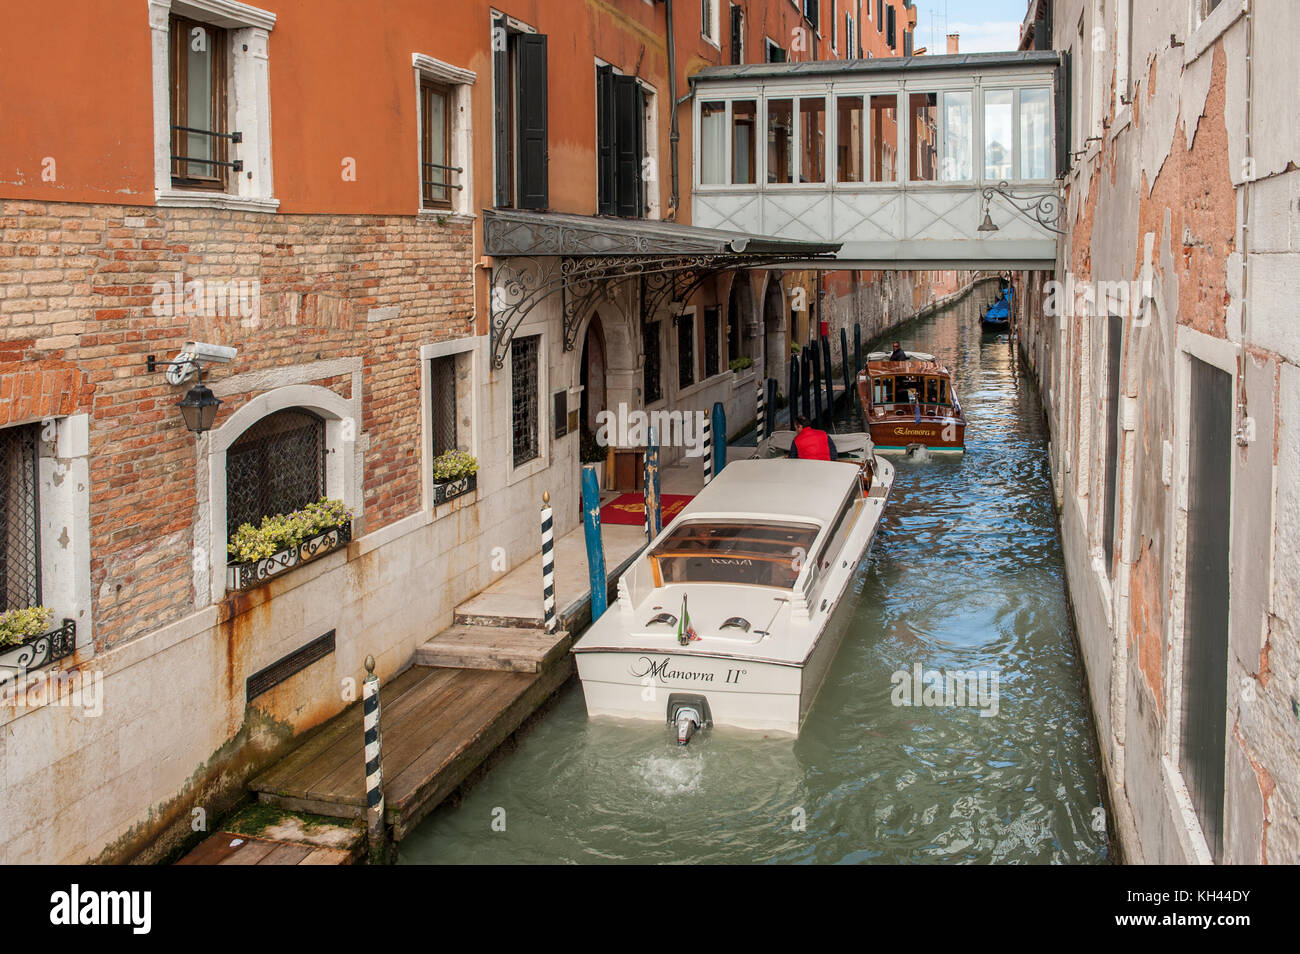 Bateau taxi à l'atterrissage à célèbre luxury hotel danieli à Venise. Venise est une destination touristique majeure en Italie. Banque D'Images